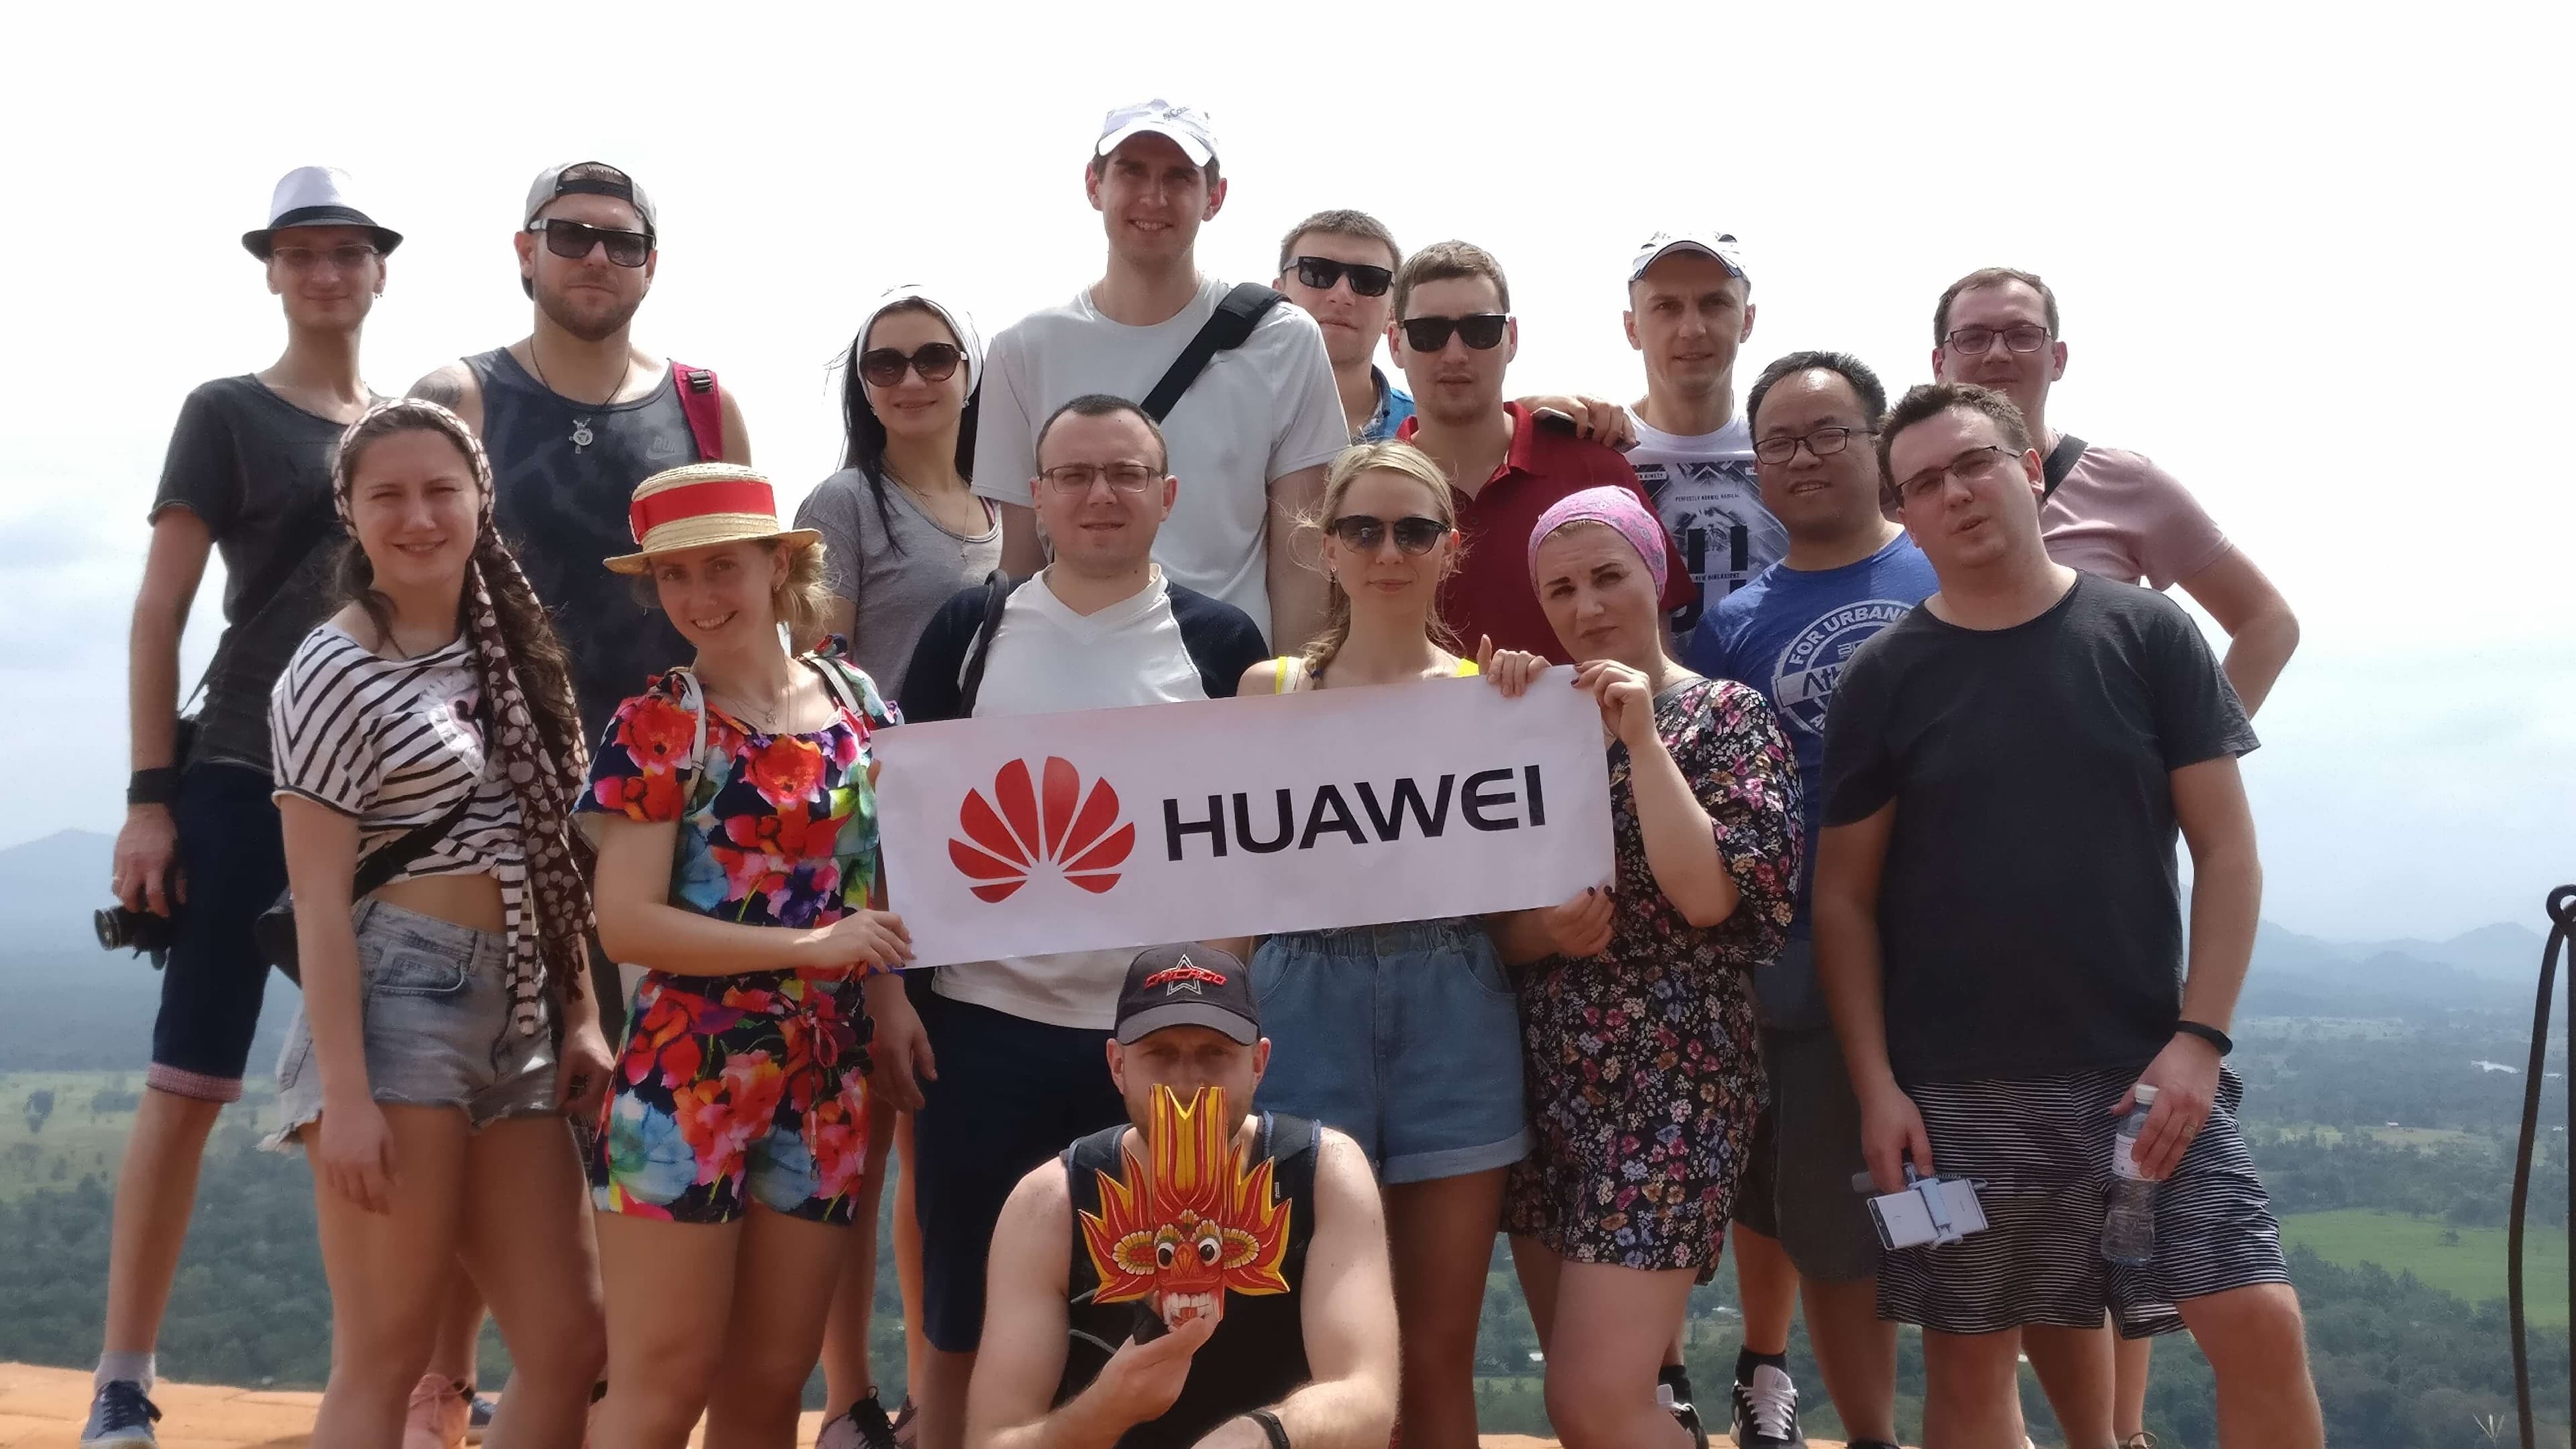 قامت شركة Huawei برعاية عطلة تحفيزية لتعزيز معنويات الفريق.